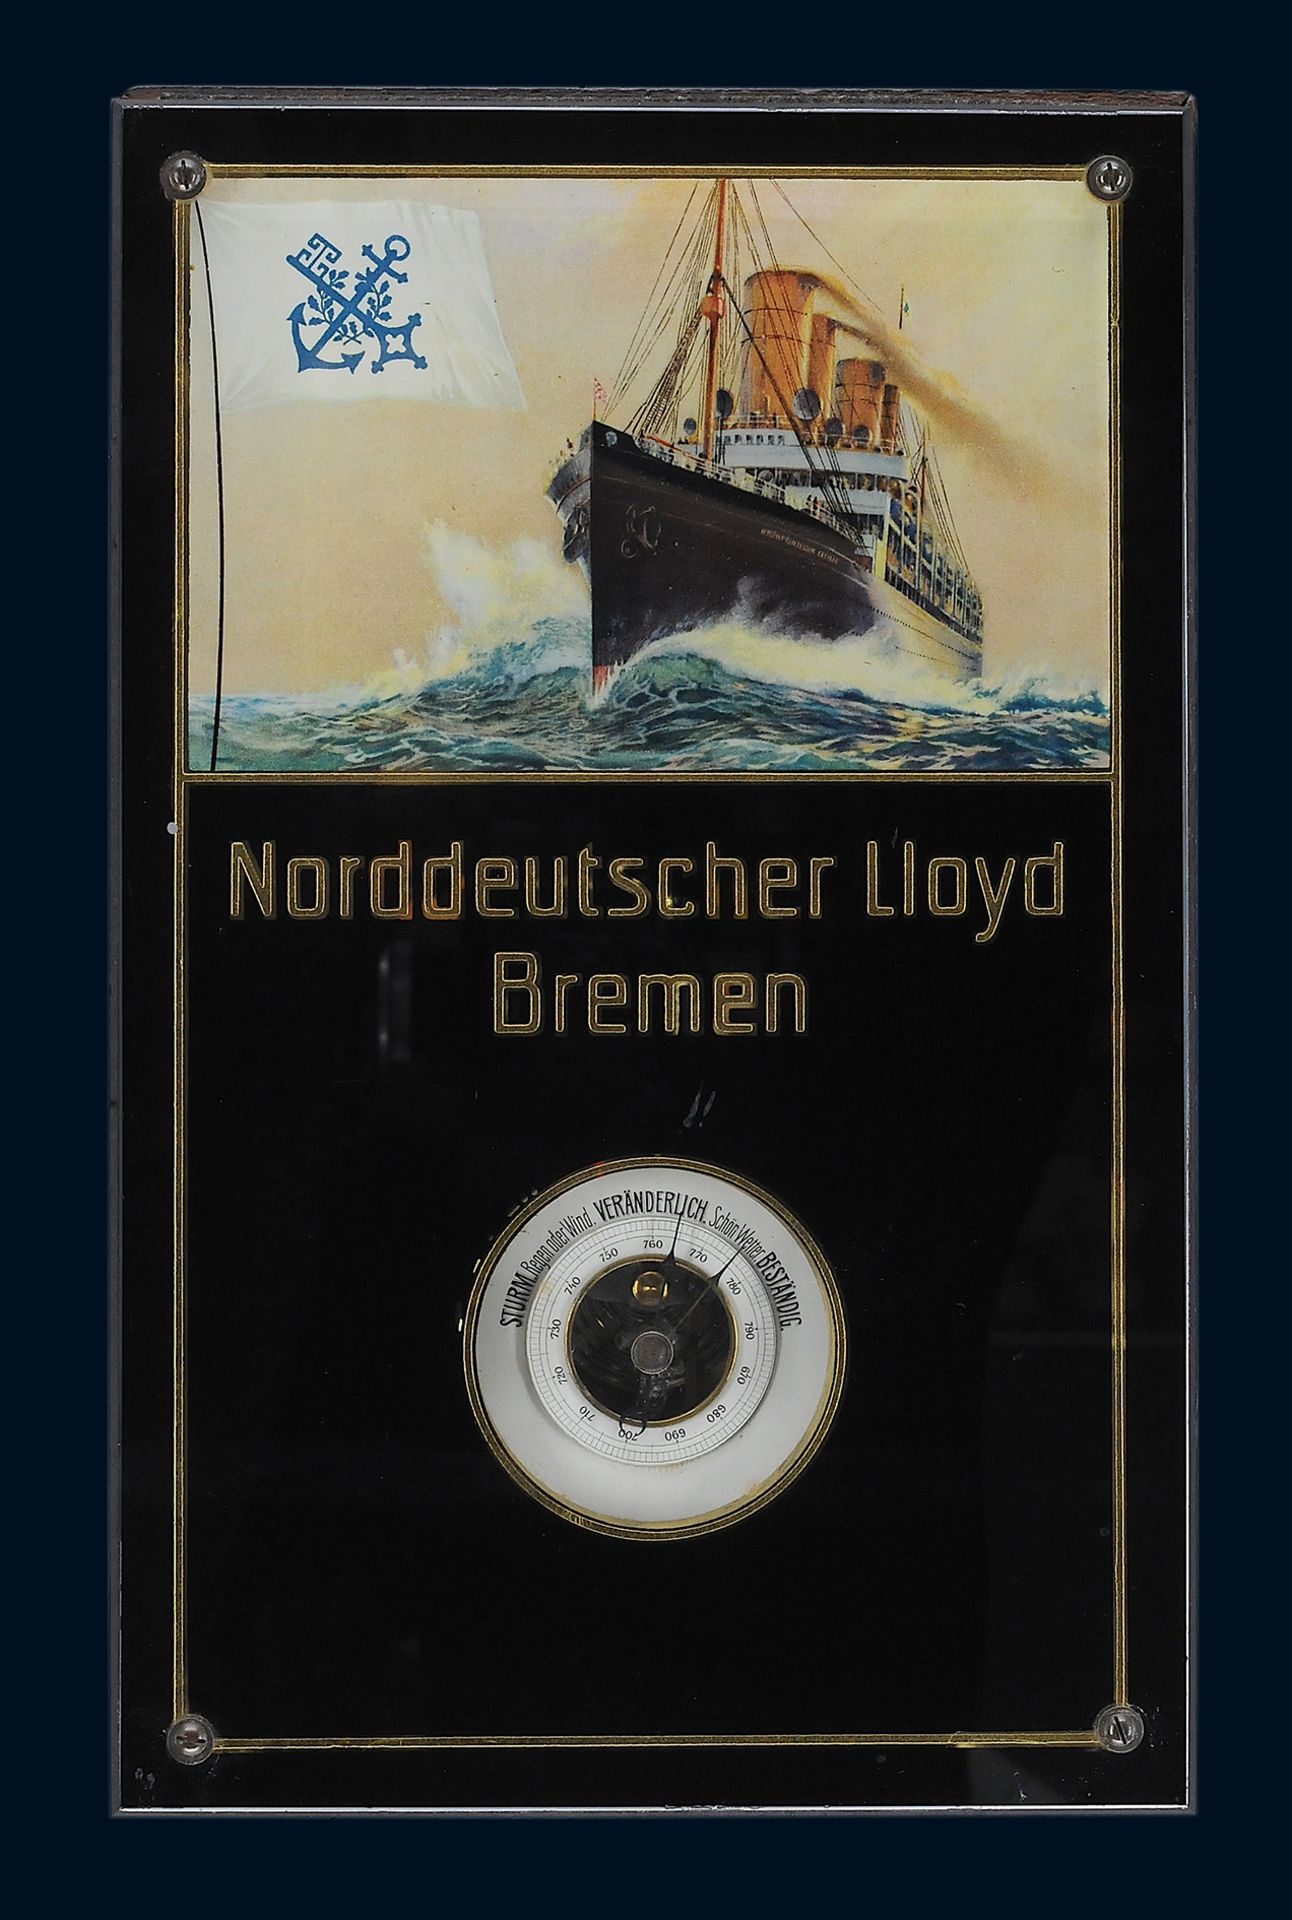 Norddeutscher Lloyd Barometer